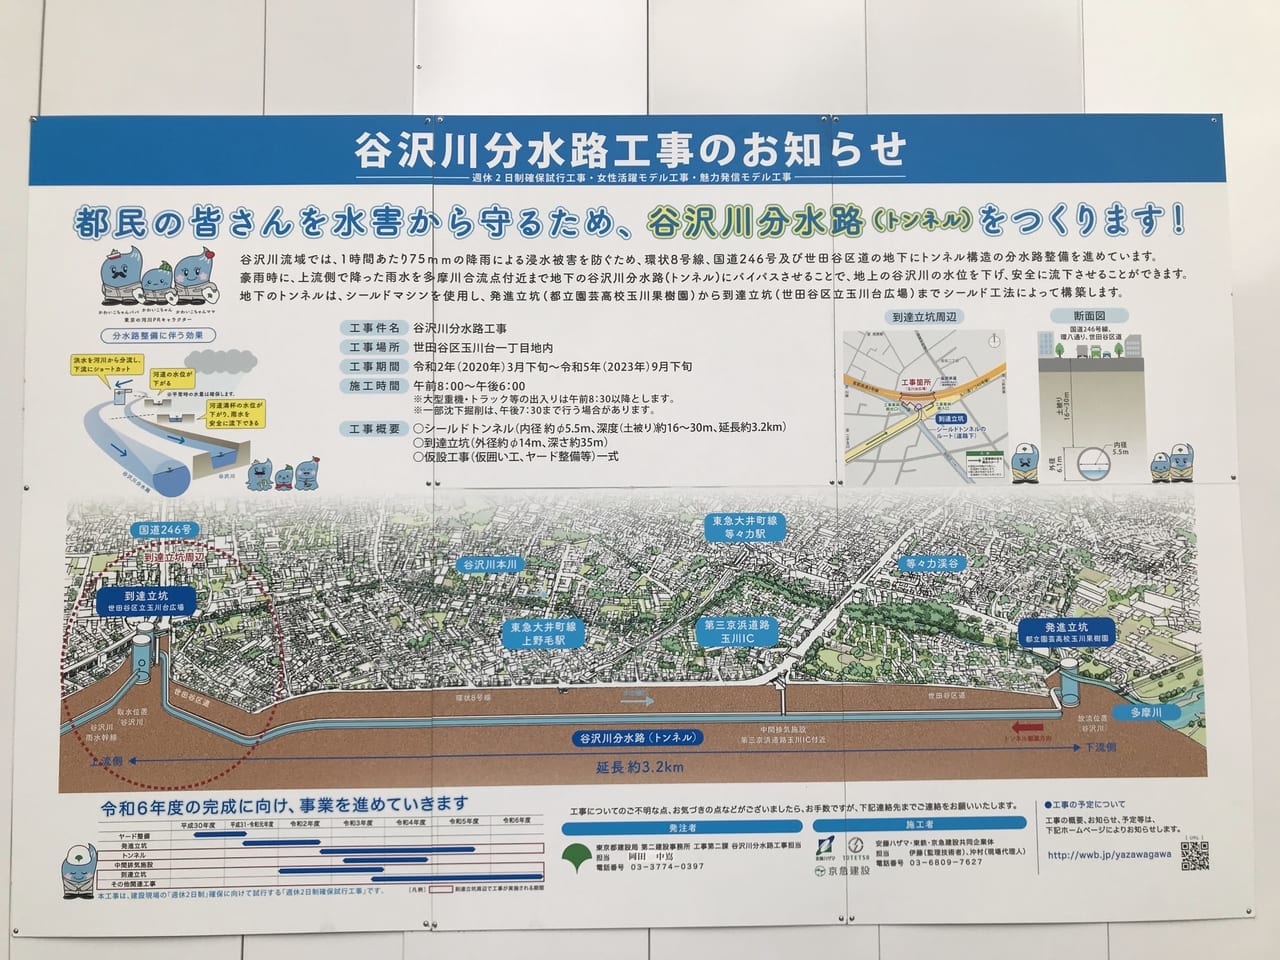 世田谷区谷沢川分水路トンネル工事は2023年完了予定